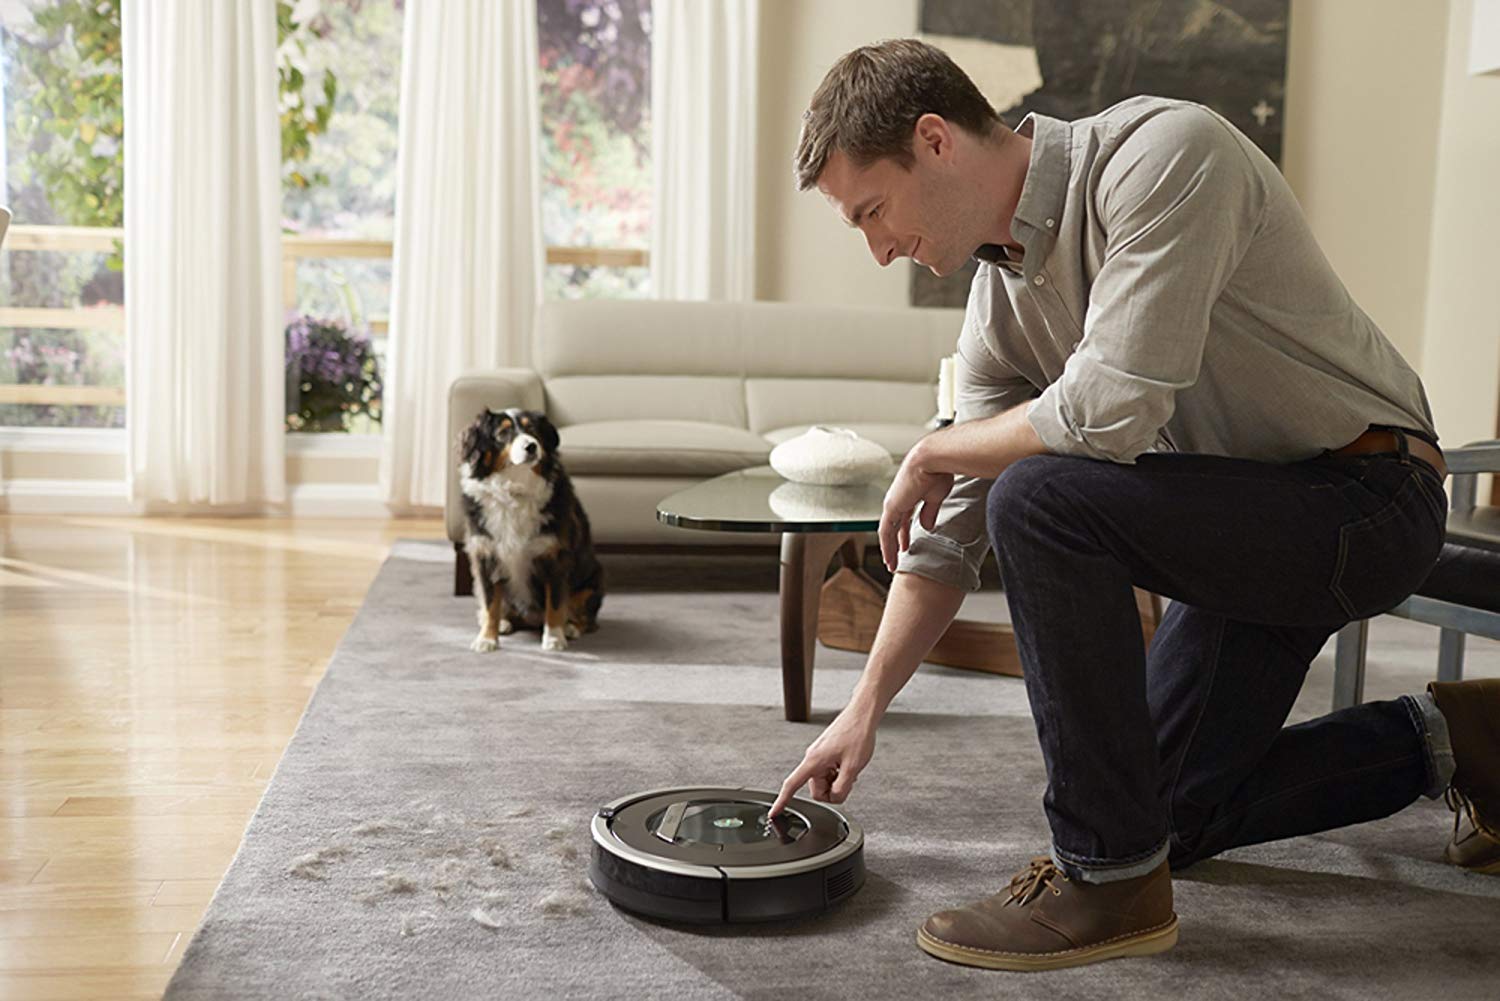 iRobot Roomba 860 Vacuum Cleaner Robot! Now Just $269.99!